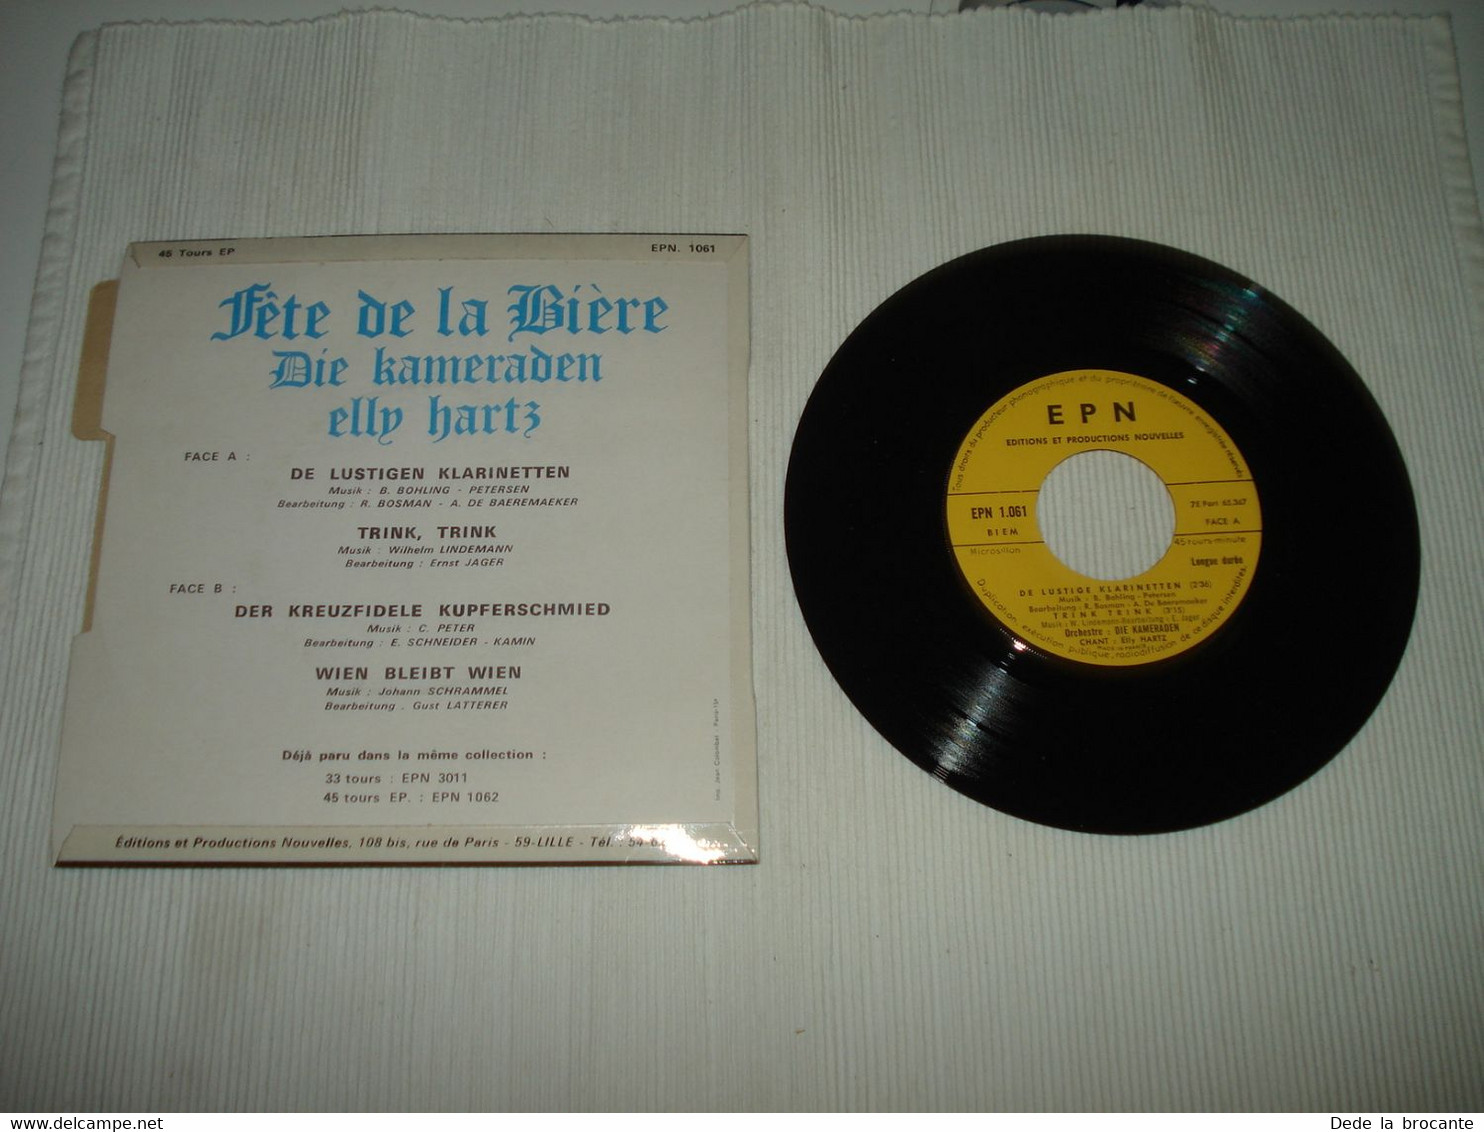 B1 / Fête De La Bière ( Bierfest ) 45 EP - EPN - 1061 - France + Languette - Other - German Music